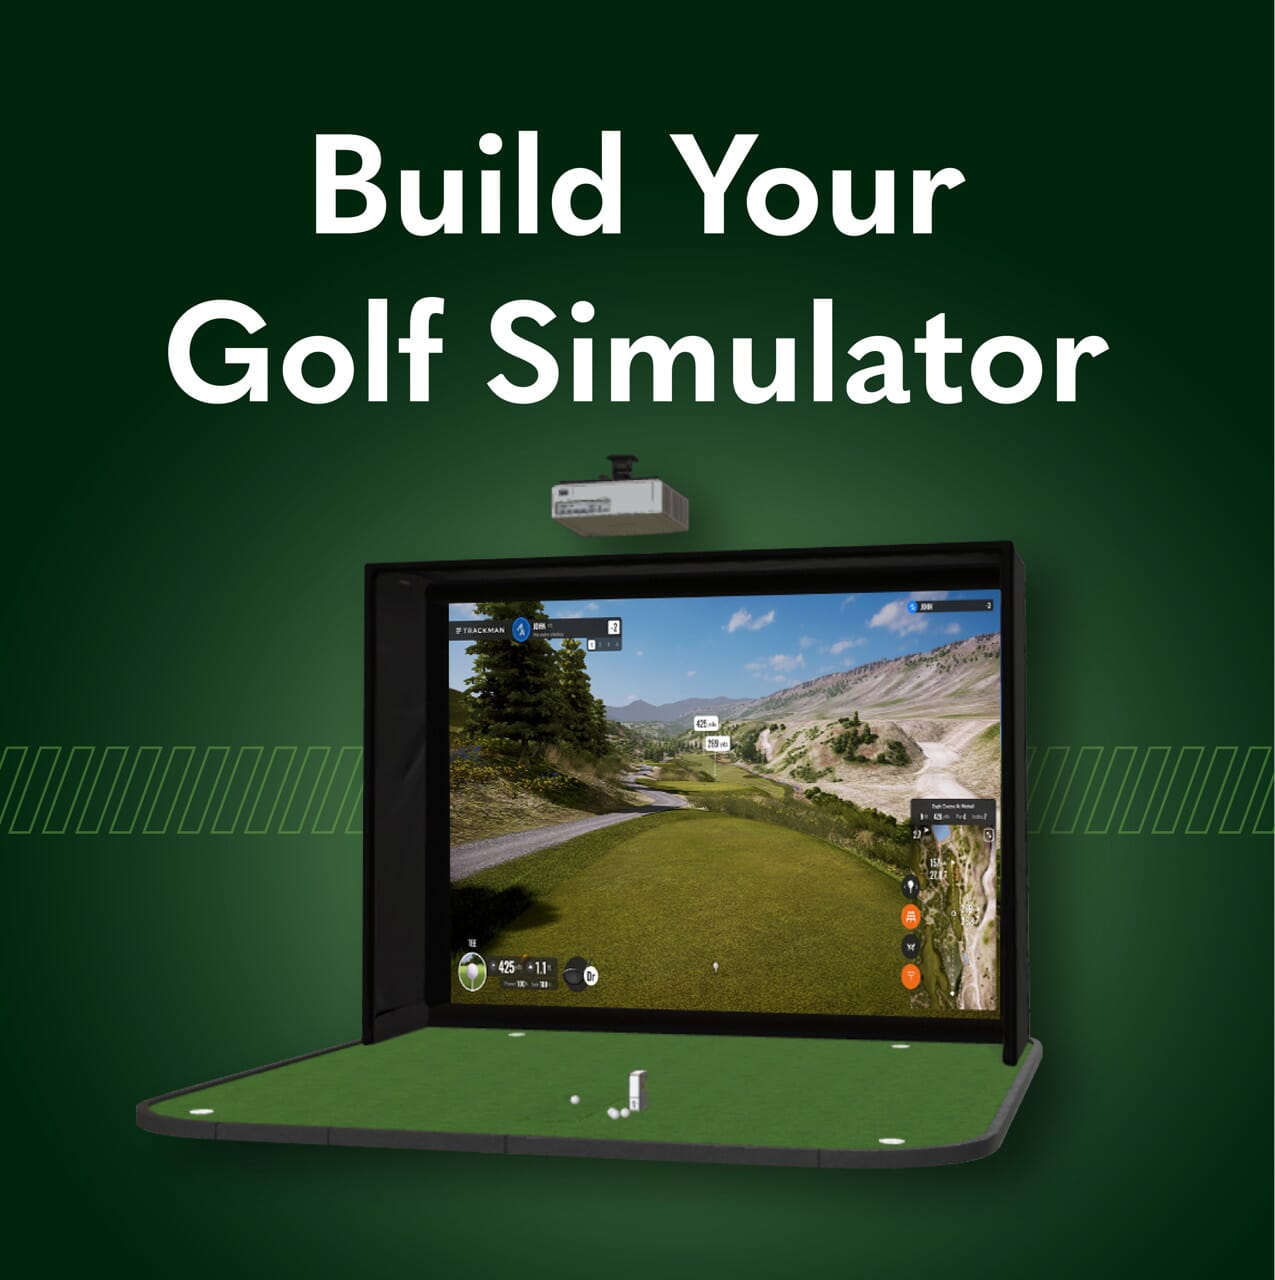 Indoor Golf Shop Golf Simulator Room Builder banner